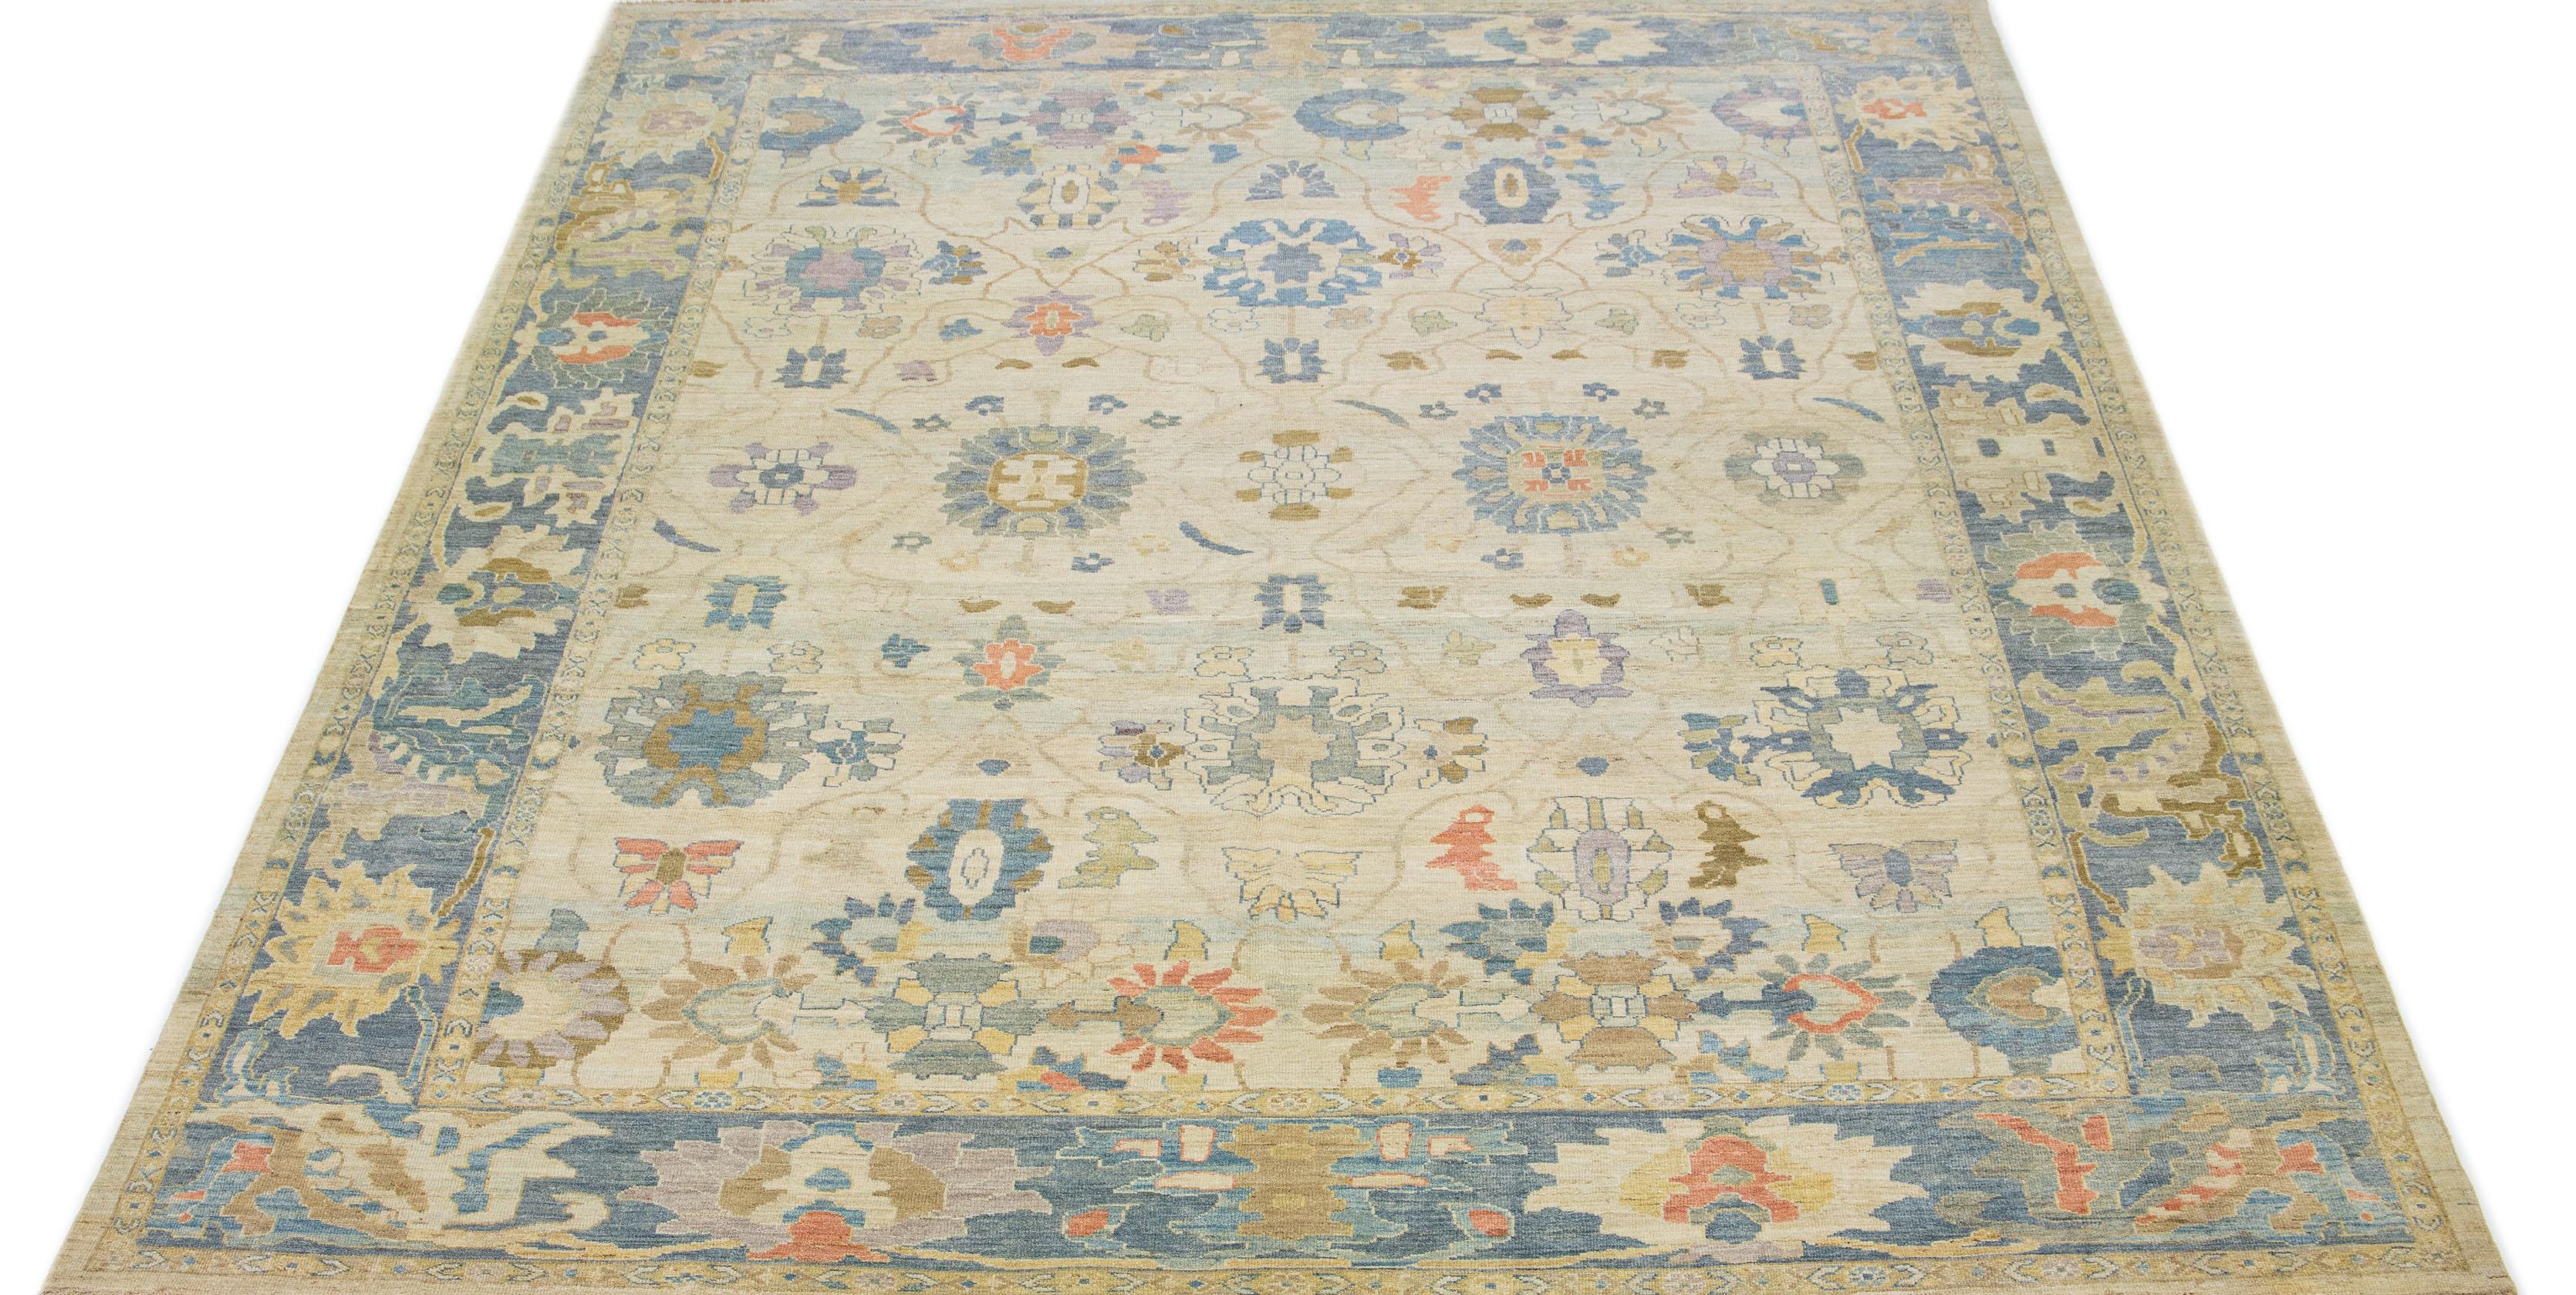 Schöner moderner Sultanabad Teppich aus handgeknüpfter Wolle mit beigem Farbfeld. Dieser Teppich hat einen marineblauen Rahmen mit mehrfarbigen Akzenten in einem wunderschönen floralen All-Over-Motiv.

Dieser Teppich misst 12'5